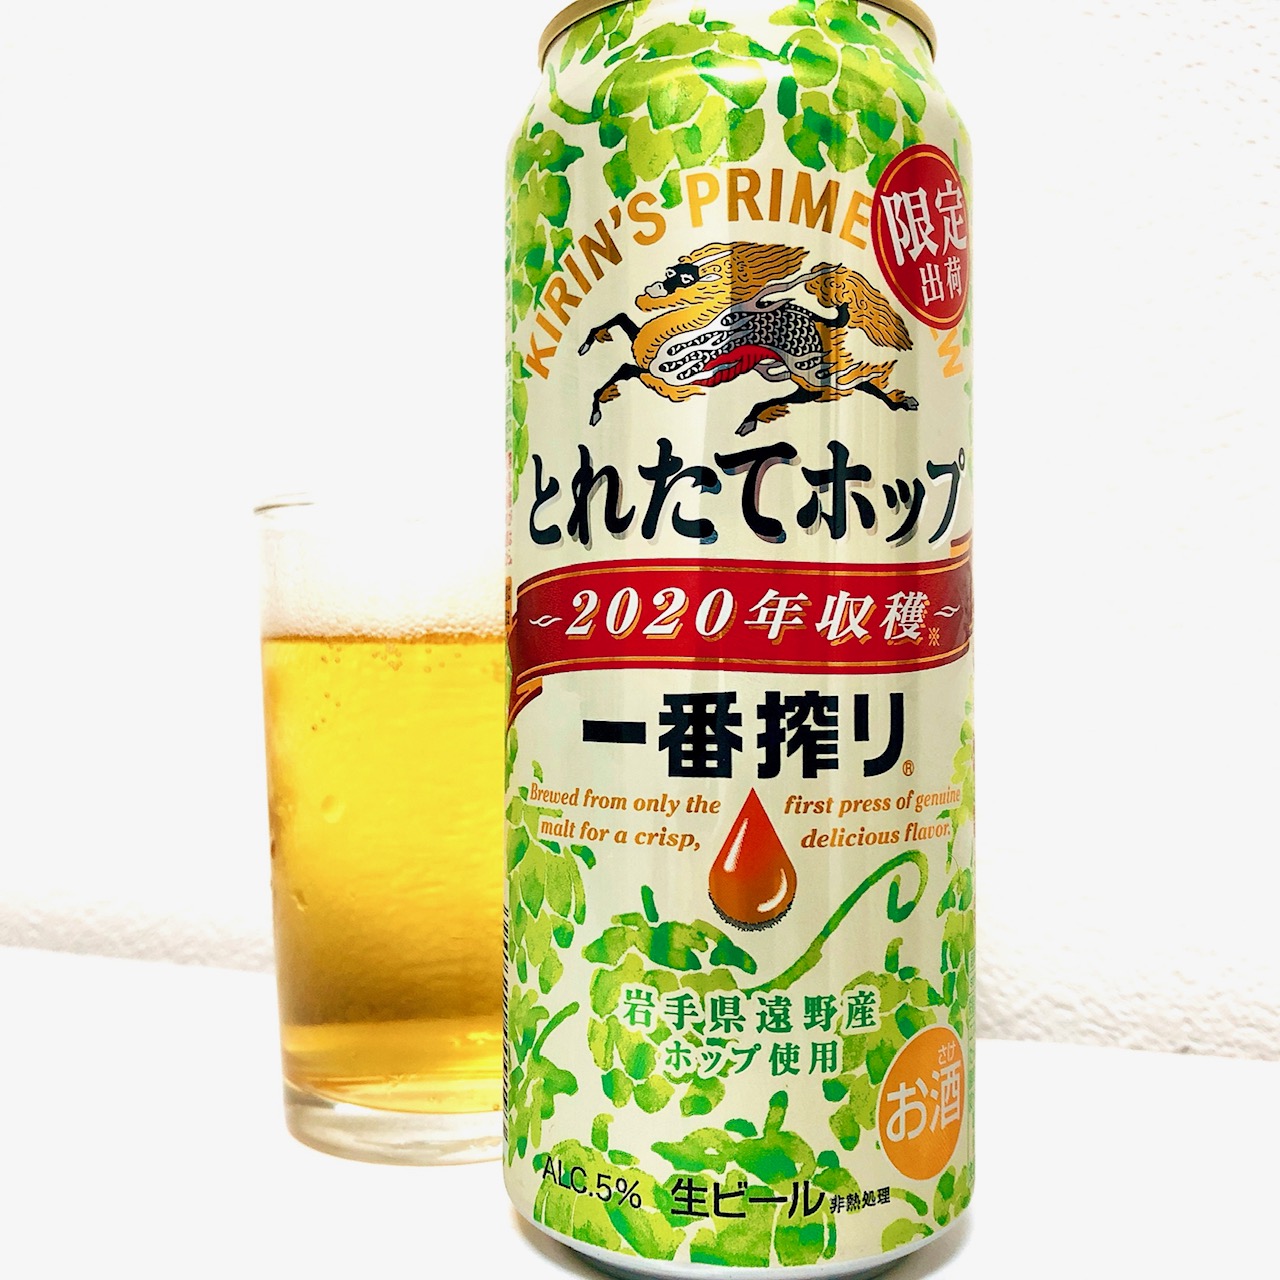 コンビニペアリング 一番搾り とれたてホップ生ビール には れんこんチップ瀬戸内レモン味 を合わせましょう 日本ビアジャーナリスト協会